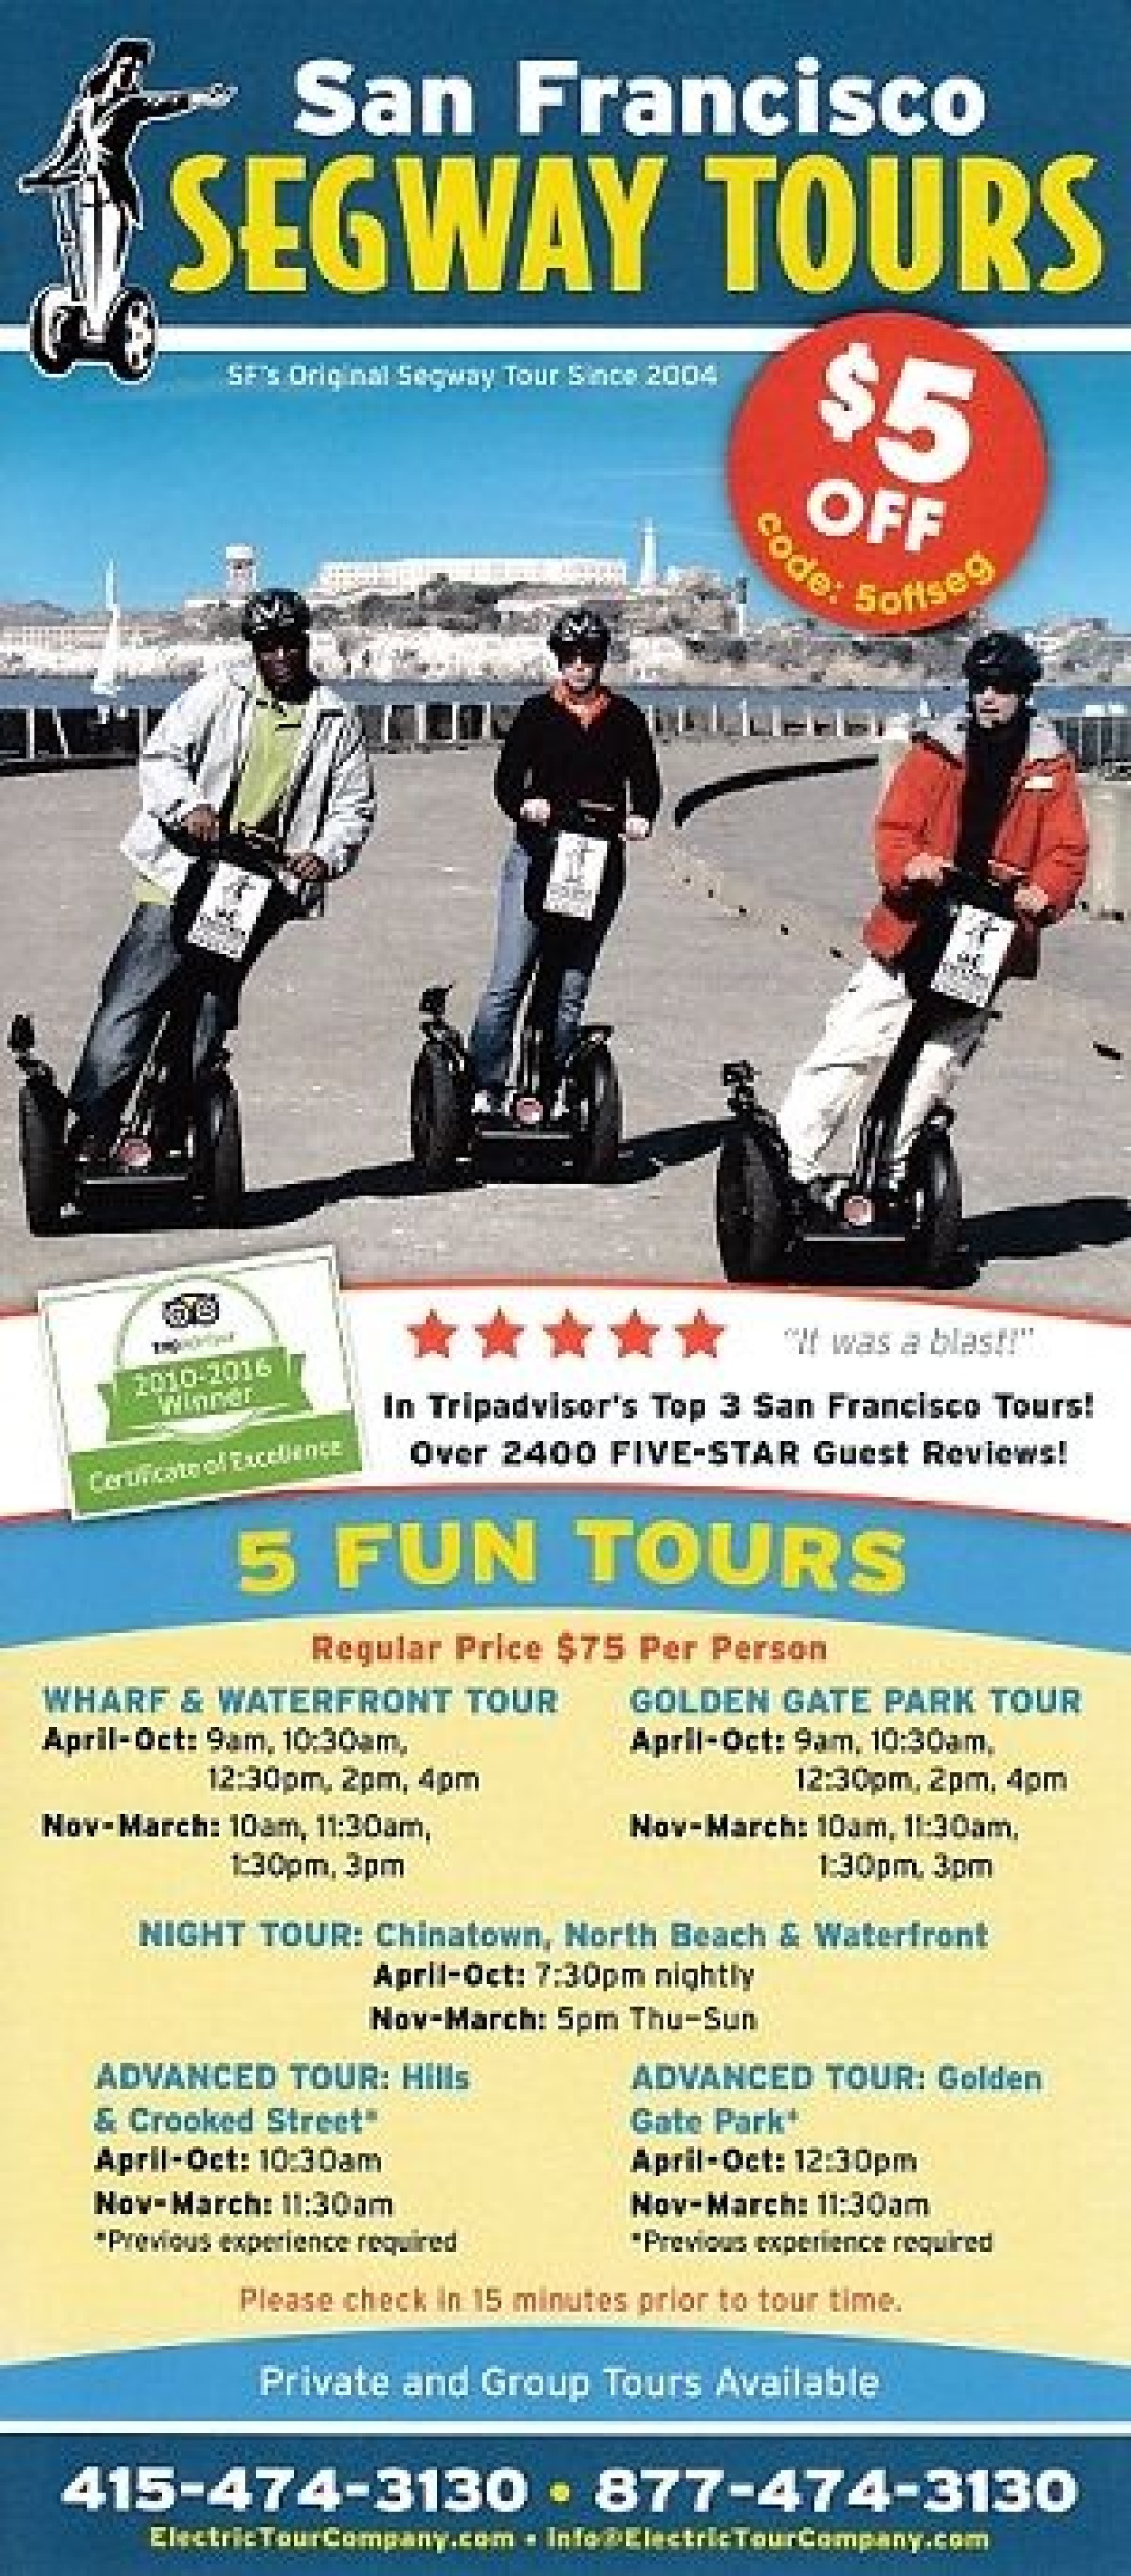 San Francisco Electric Tour Co | Segway Tours- San Francisco | San Francisco, CA ...